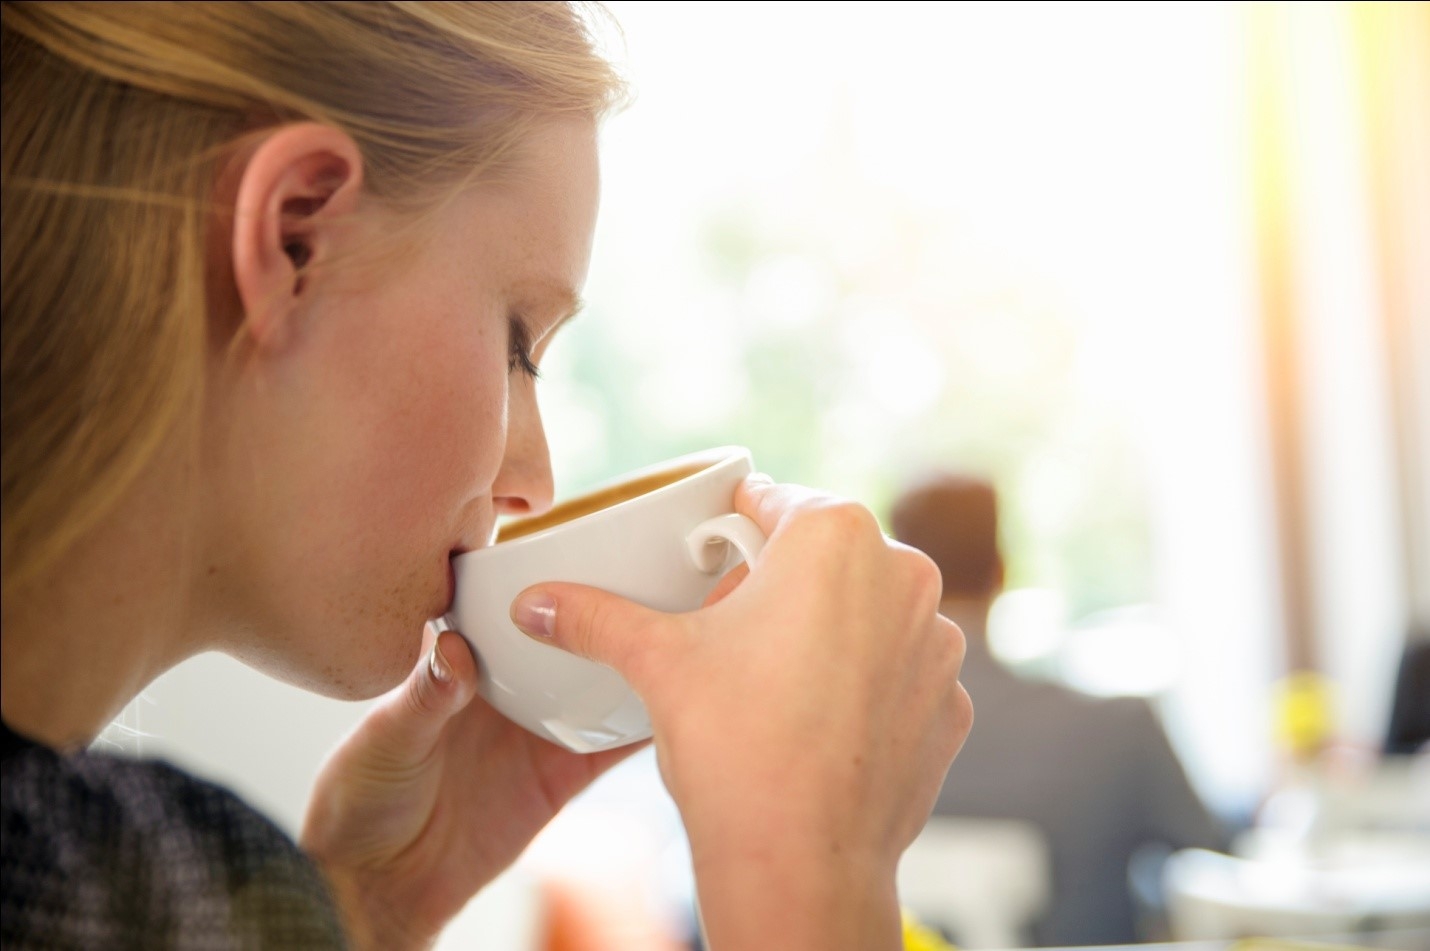 Как сварить молотый кофе без турки и кофеварки в домашних условиях